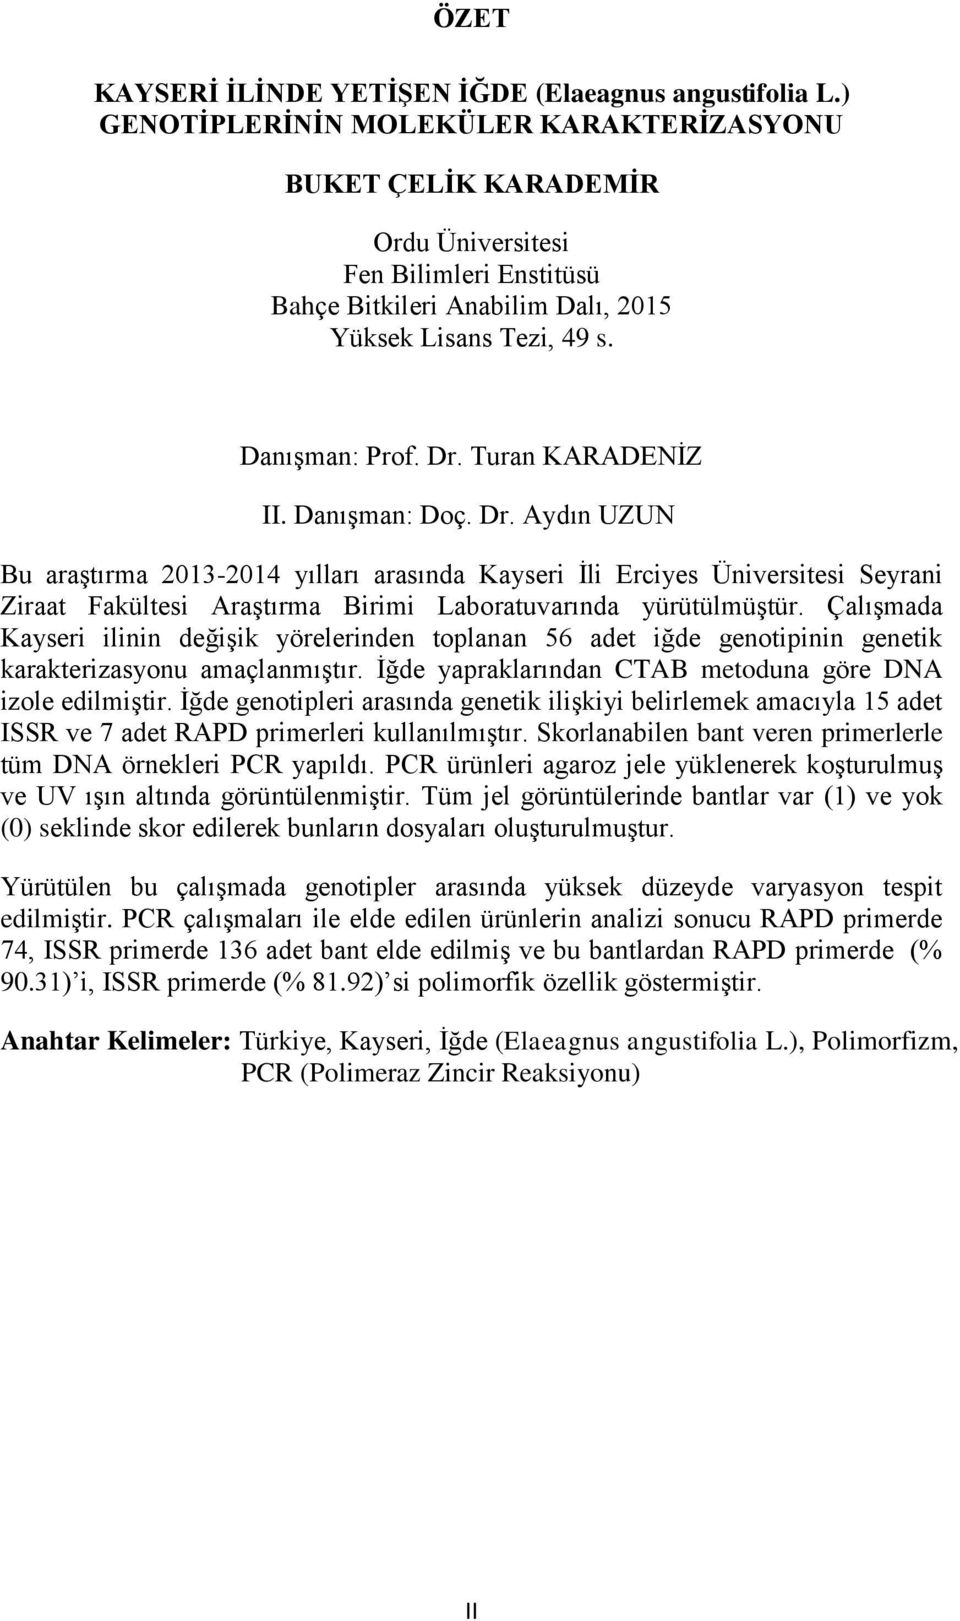 Turan KARADENİZ II. Danışman: Doç. Dr. Aydın UZUN Bu araştırma 2013-2014 yılları arasında Kayseri İli Erciyes Üniversitesi Seyrani Ziraat Fakültesi Araştırma Birimi Laboratuvarında yürütülmüştür.